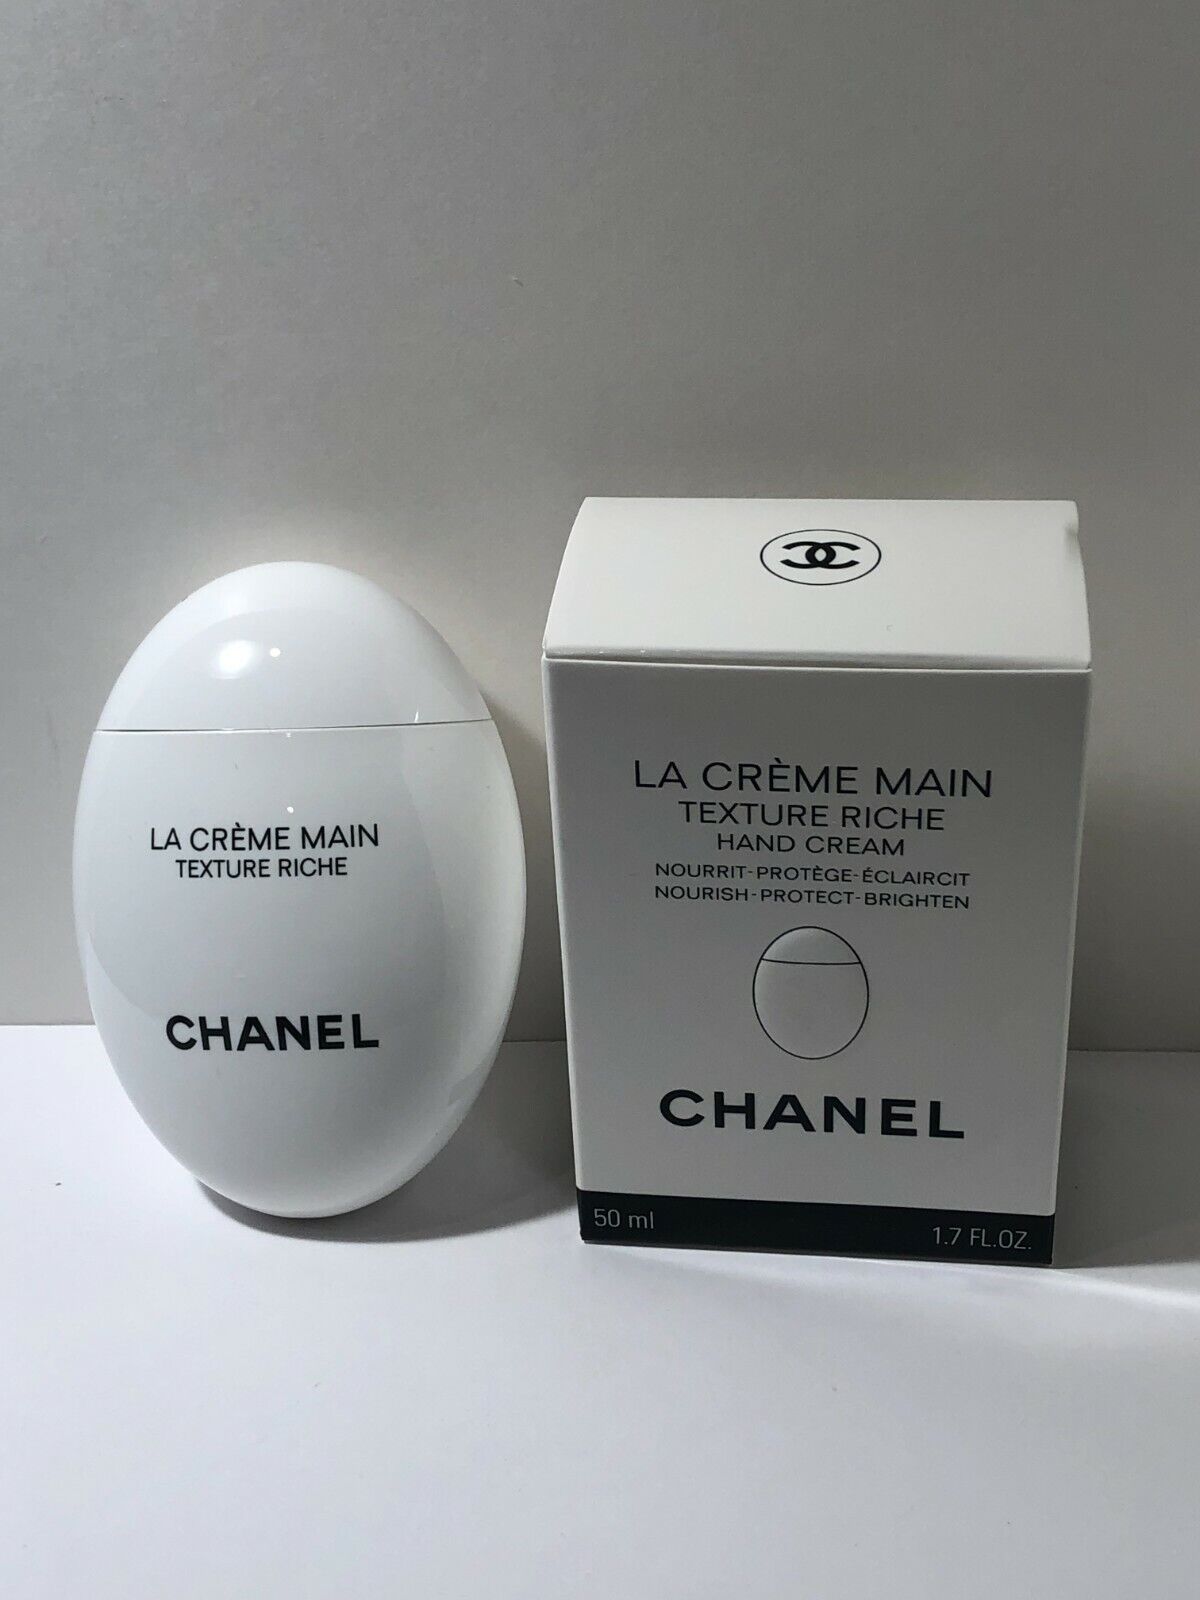 LA CREME MAIN Texture Riche Hand Cream 1.7 oz / 50 ML 3145891403602 |